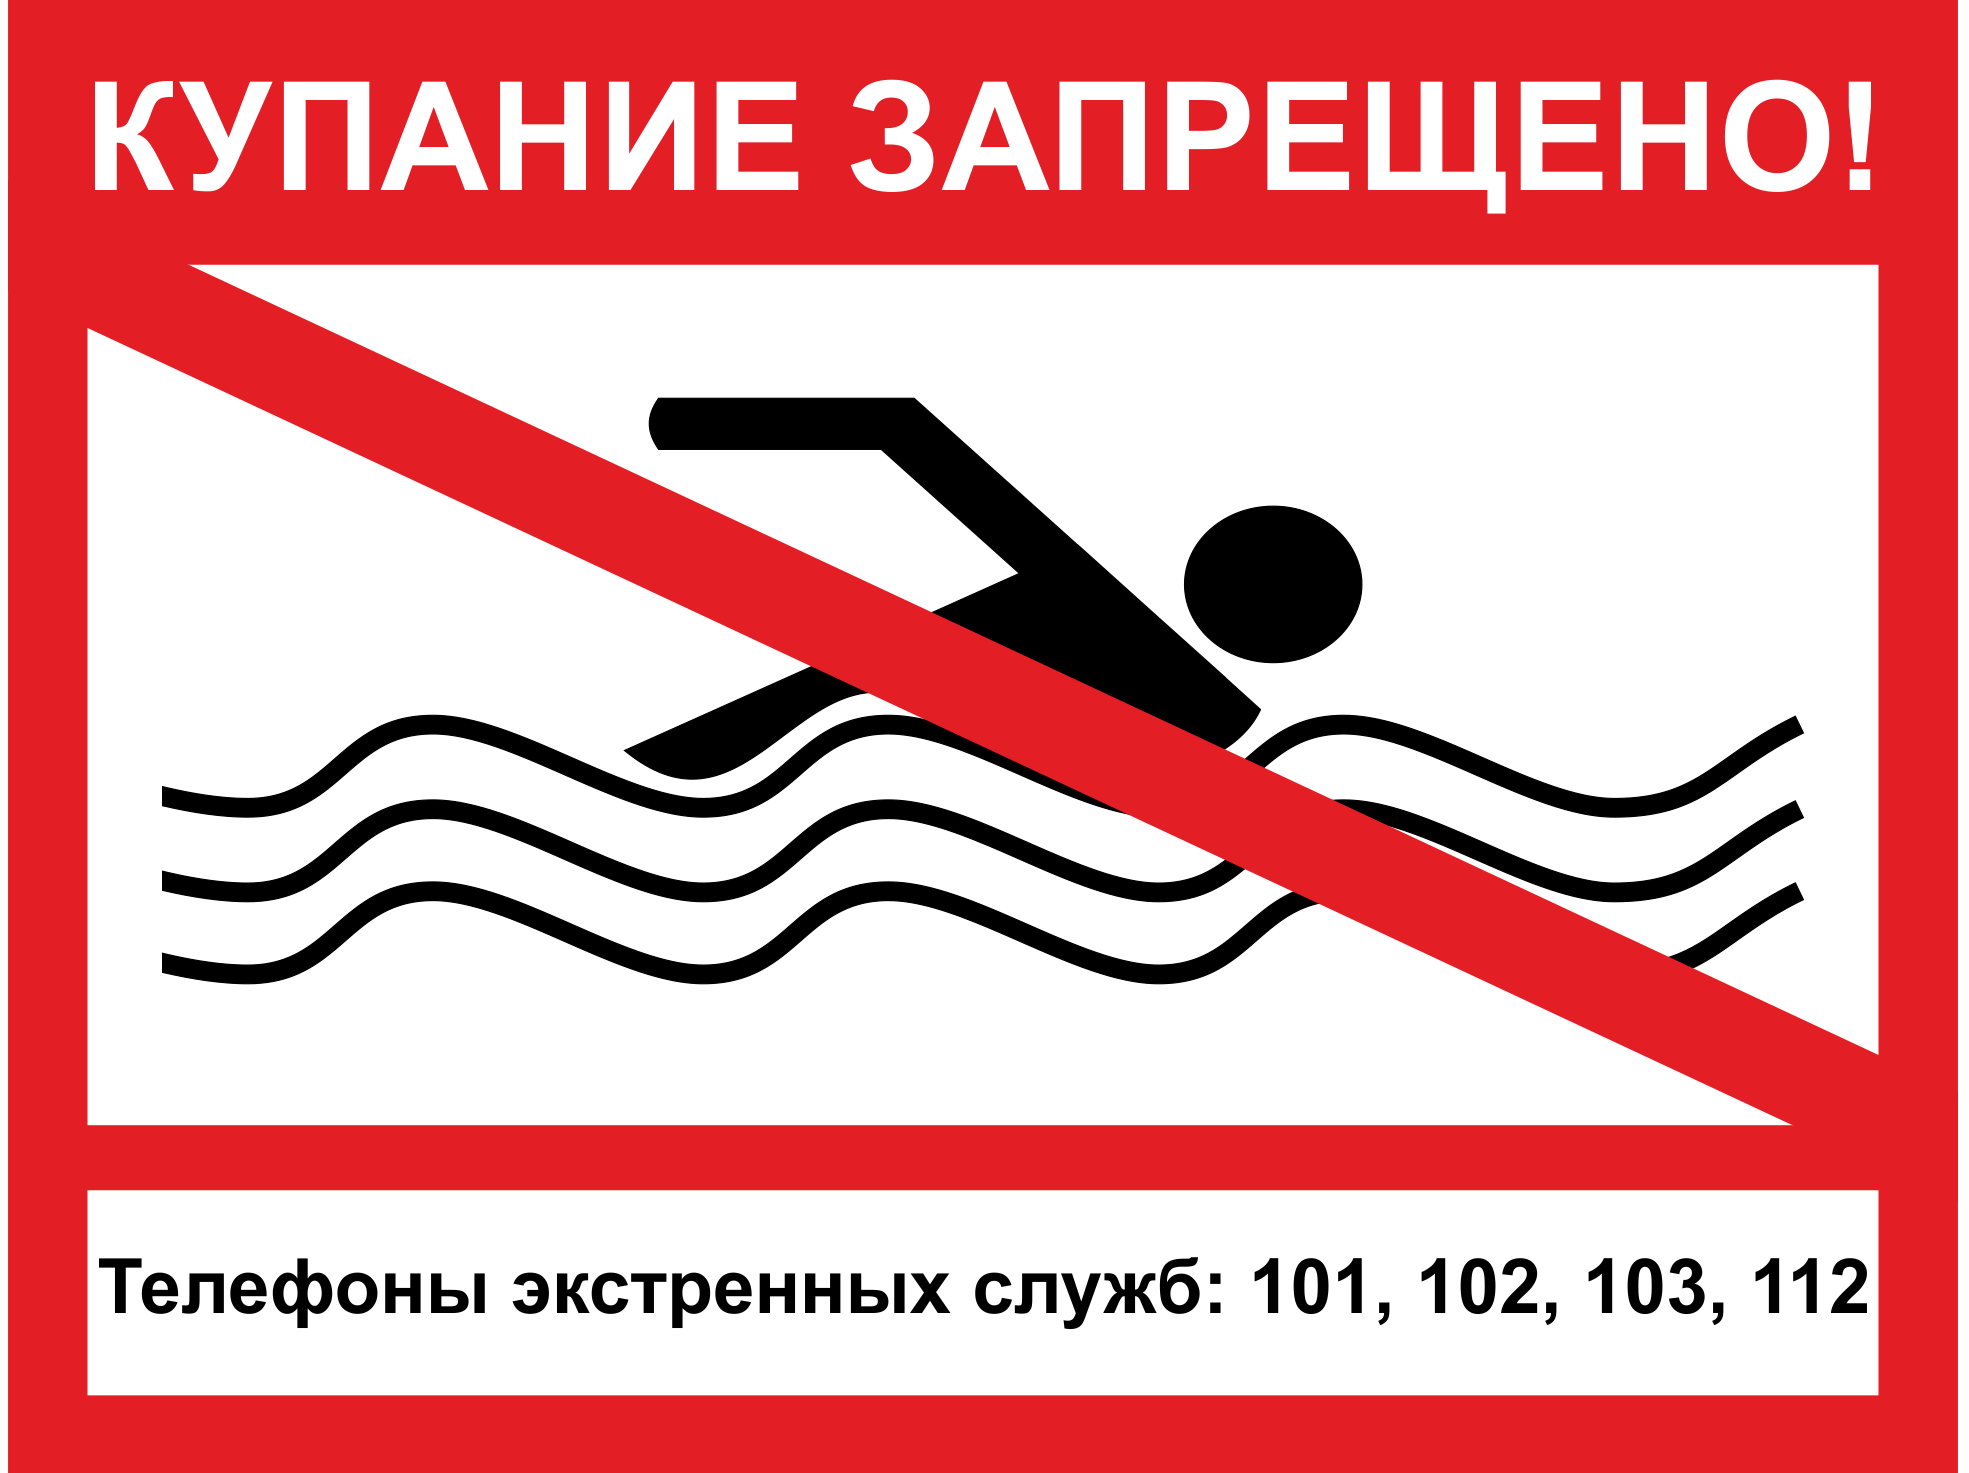 купаться нельзя